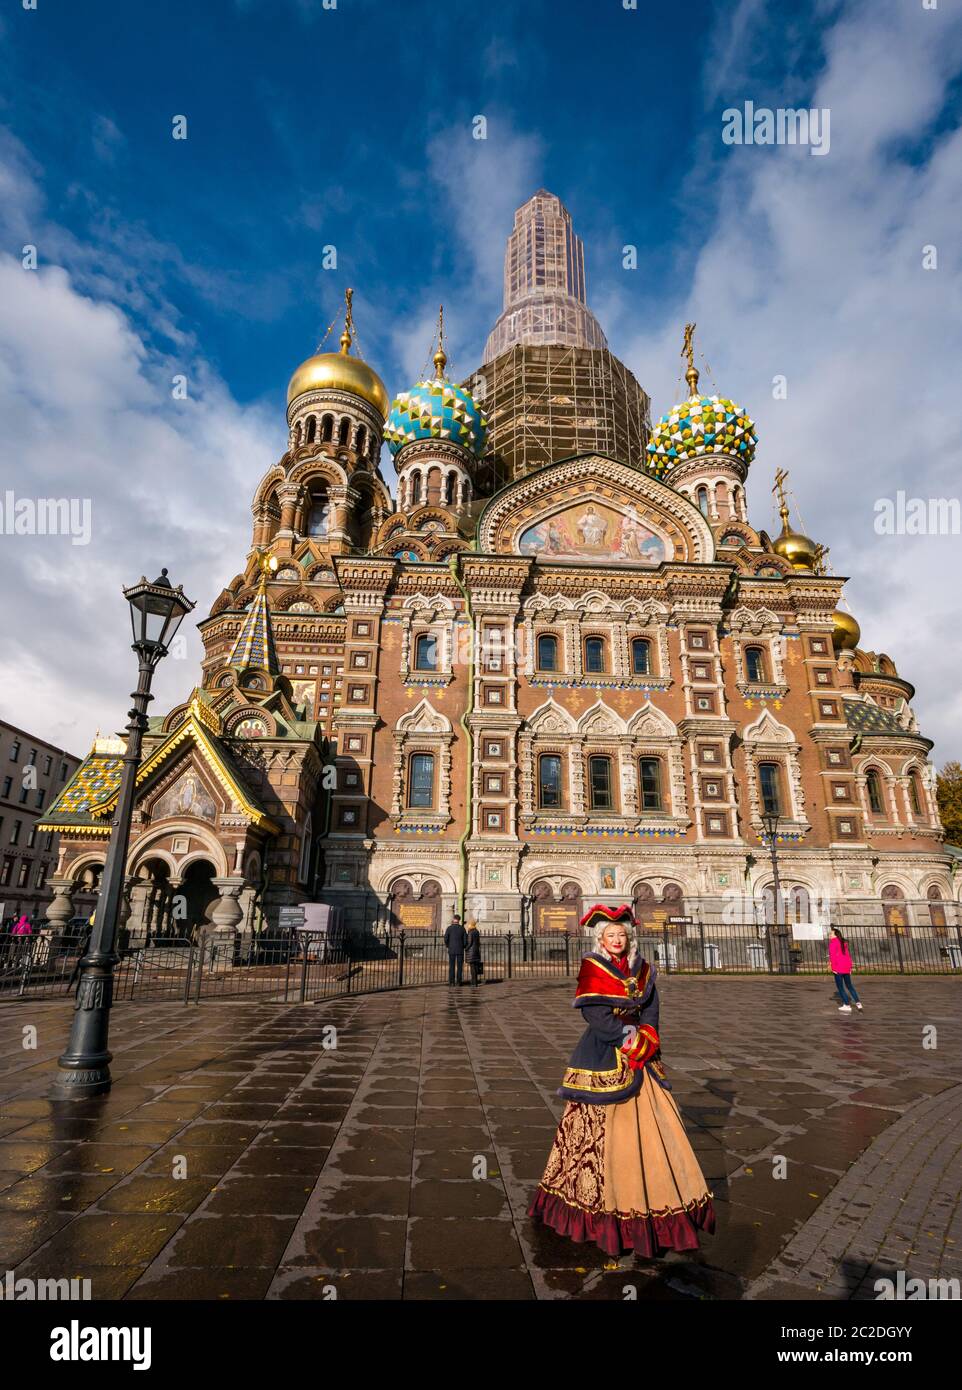 Turista en la Iglesia del Salvador en la sangre derramada fachada con mujer vestida con traje de época como atracción turística, San Petersburgo, Rusia Foto de stock